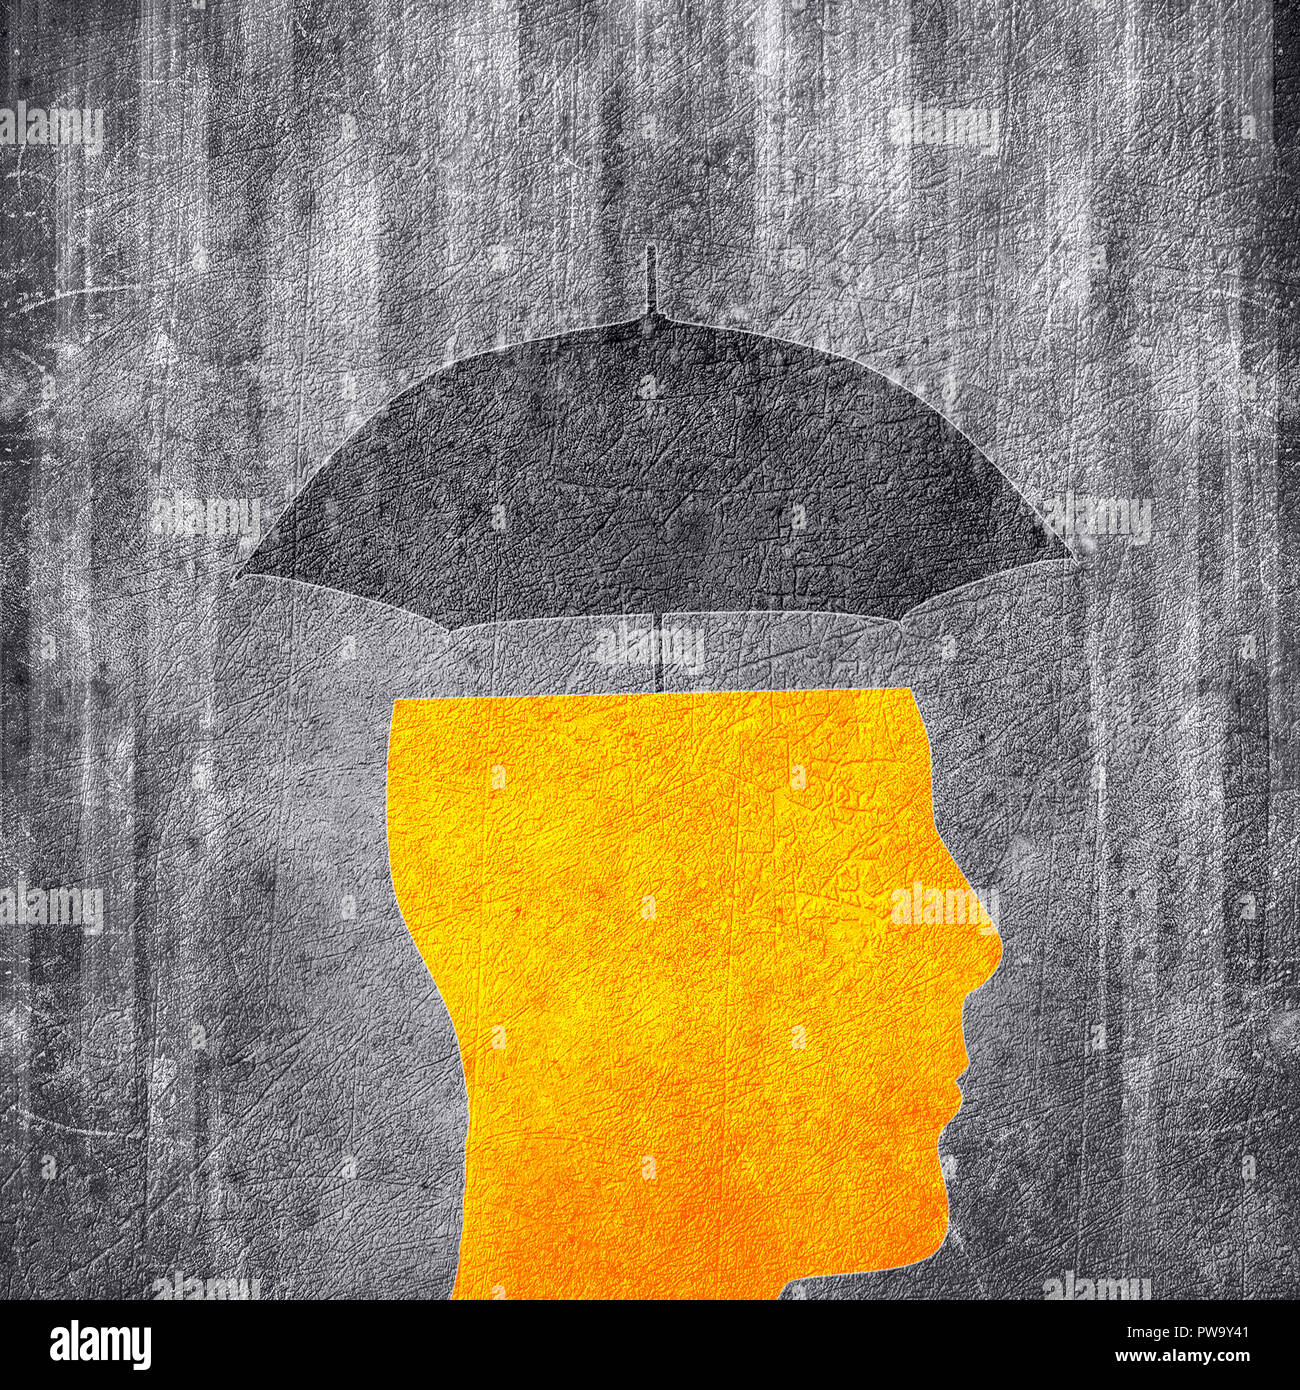 human head and umbrella  conceptual digital illustration Stock Photo